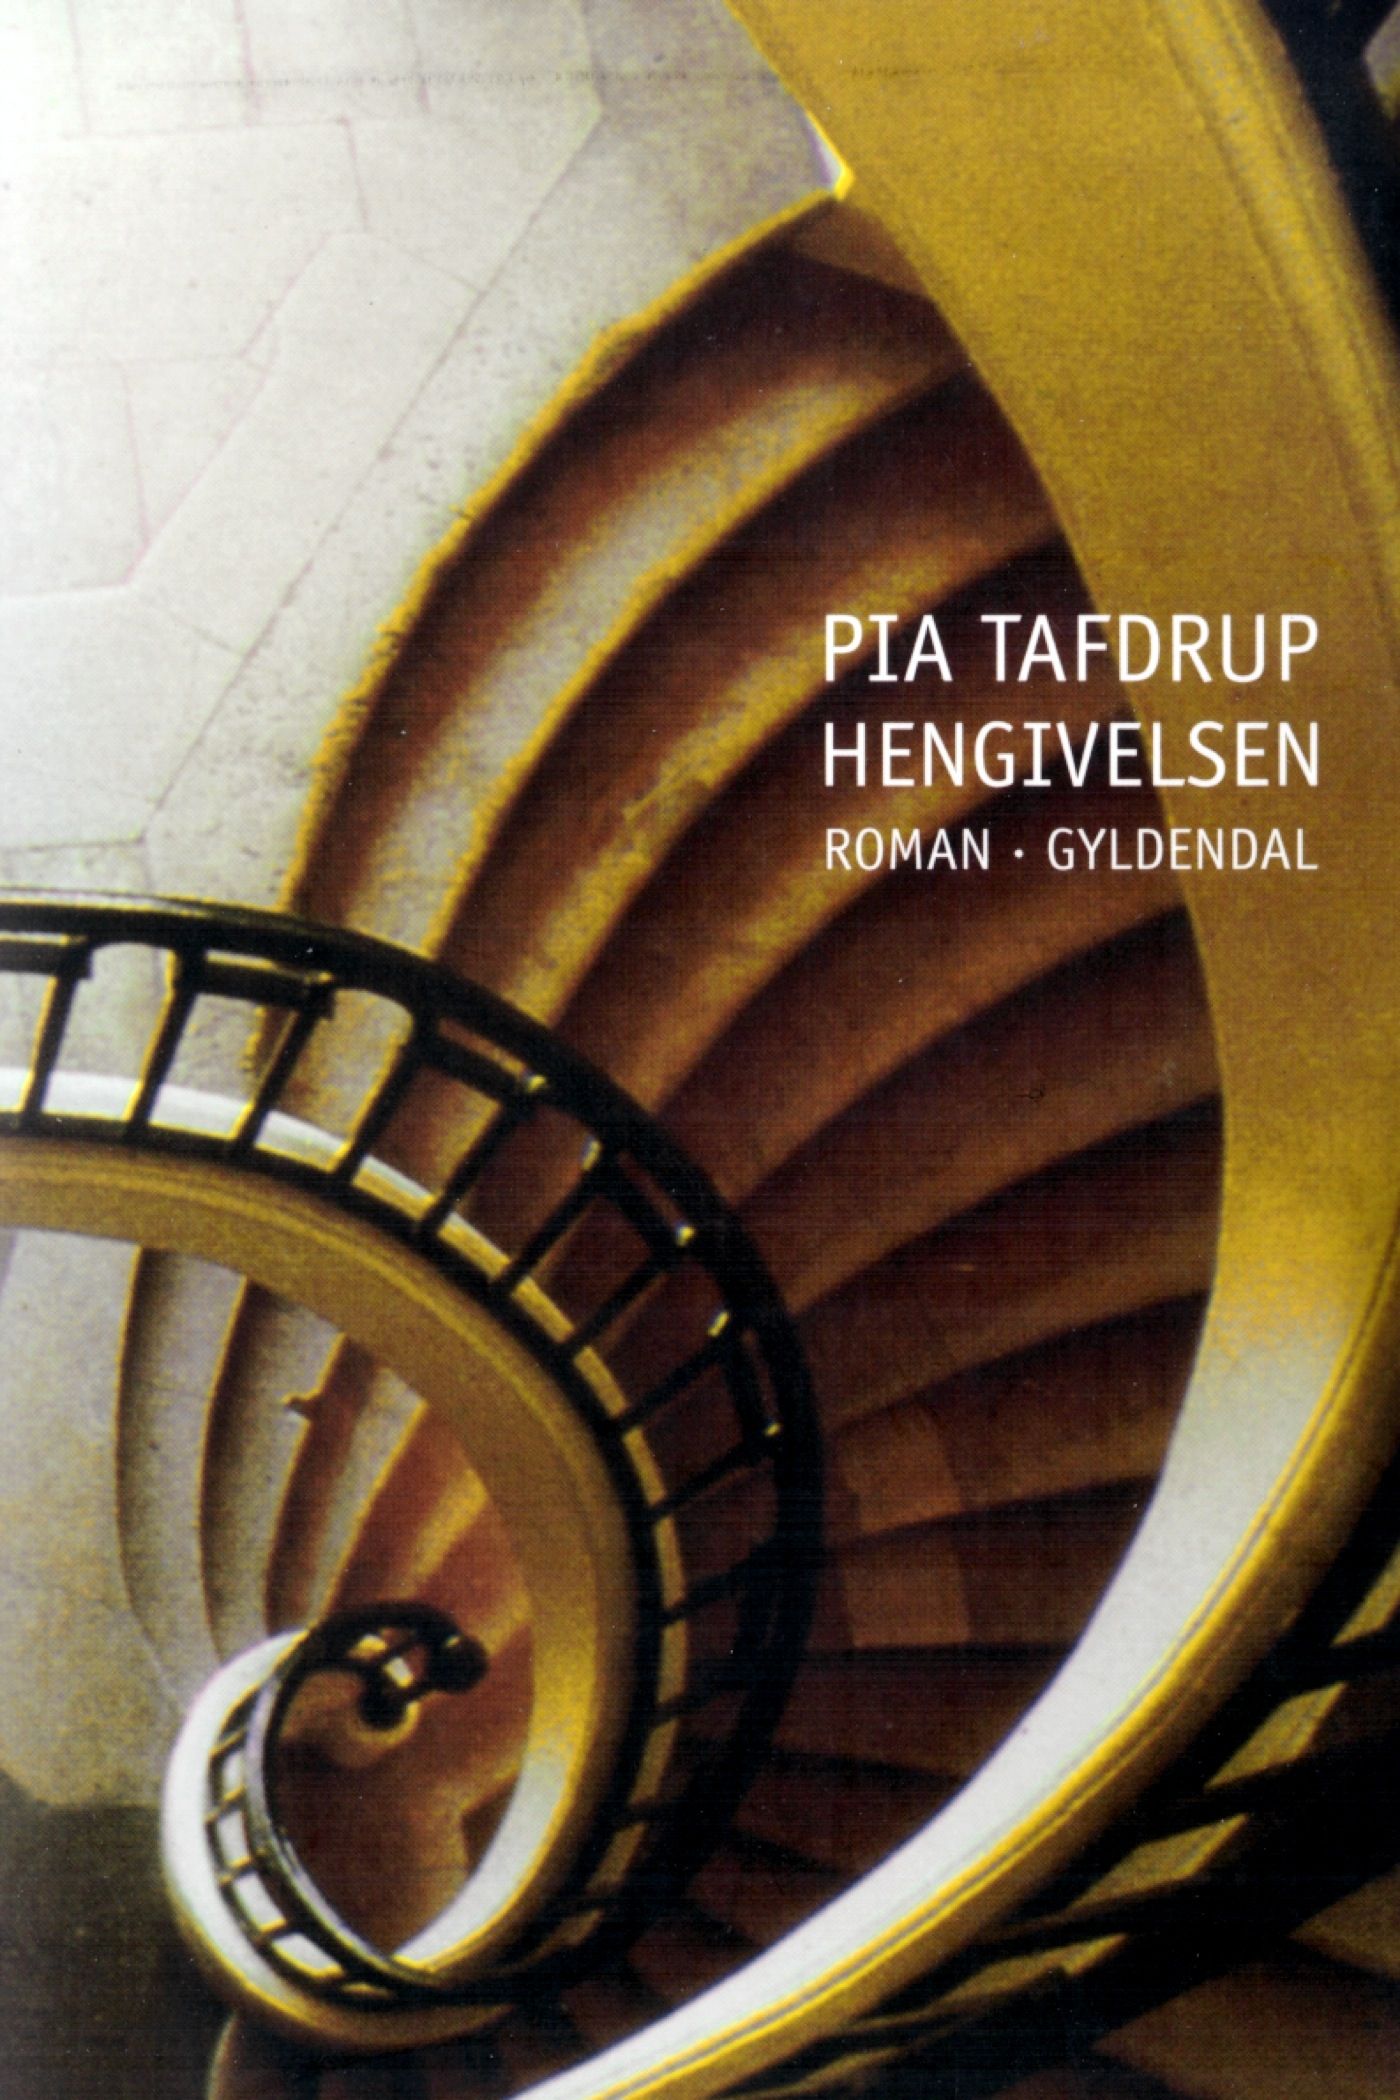 Hengivelsen, eBook by Pia Tafdrup